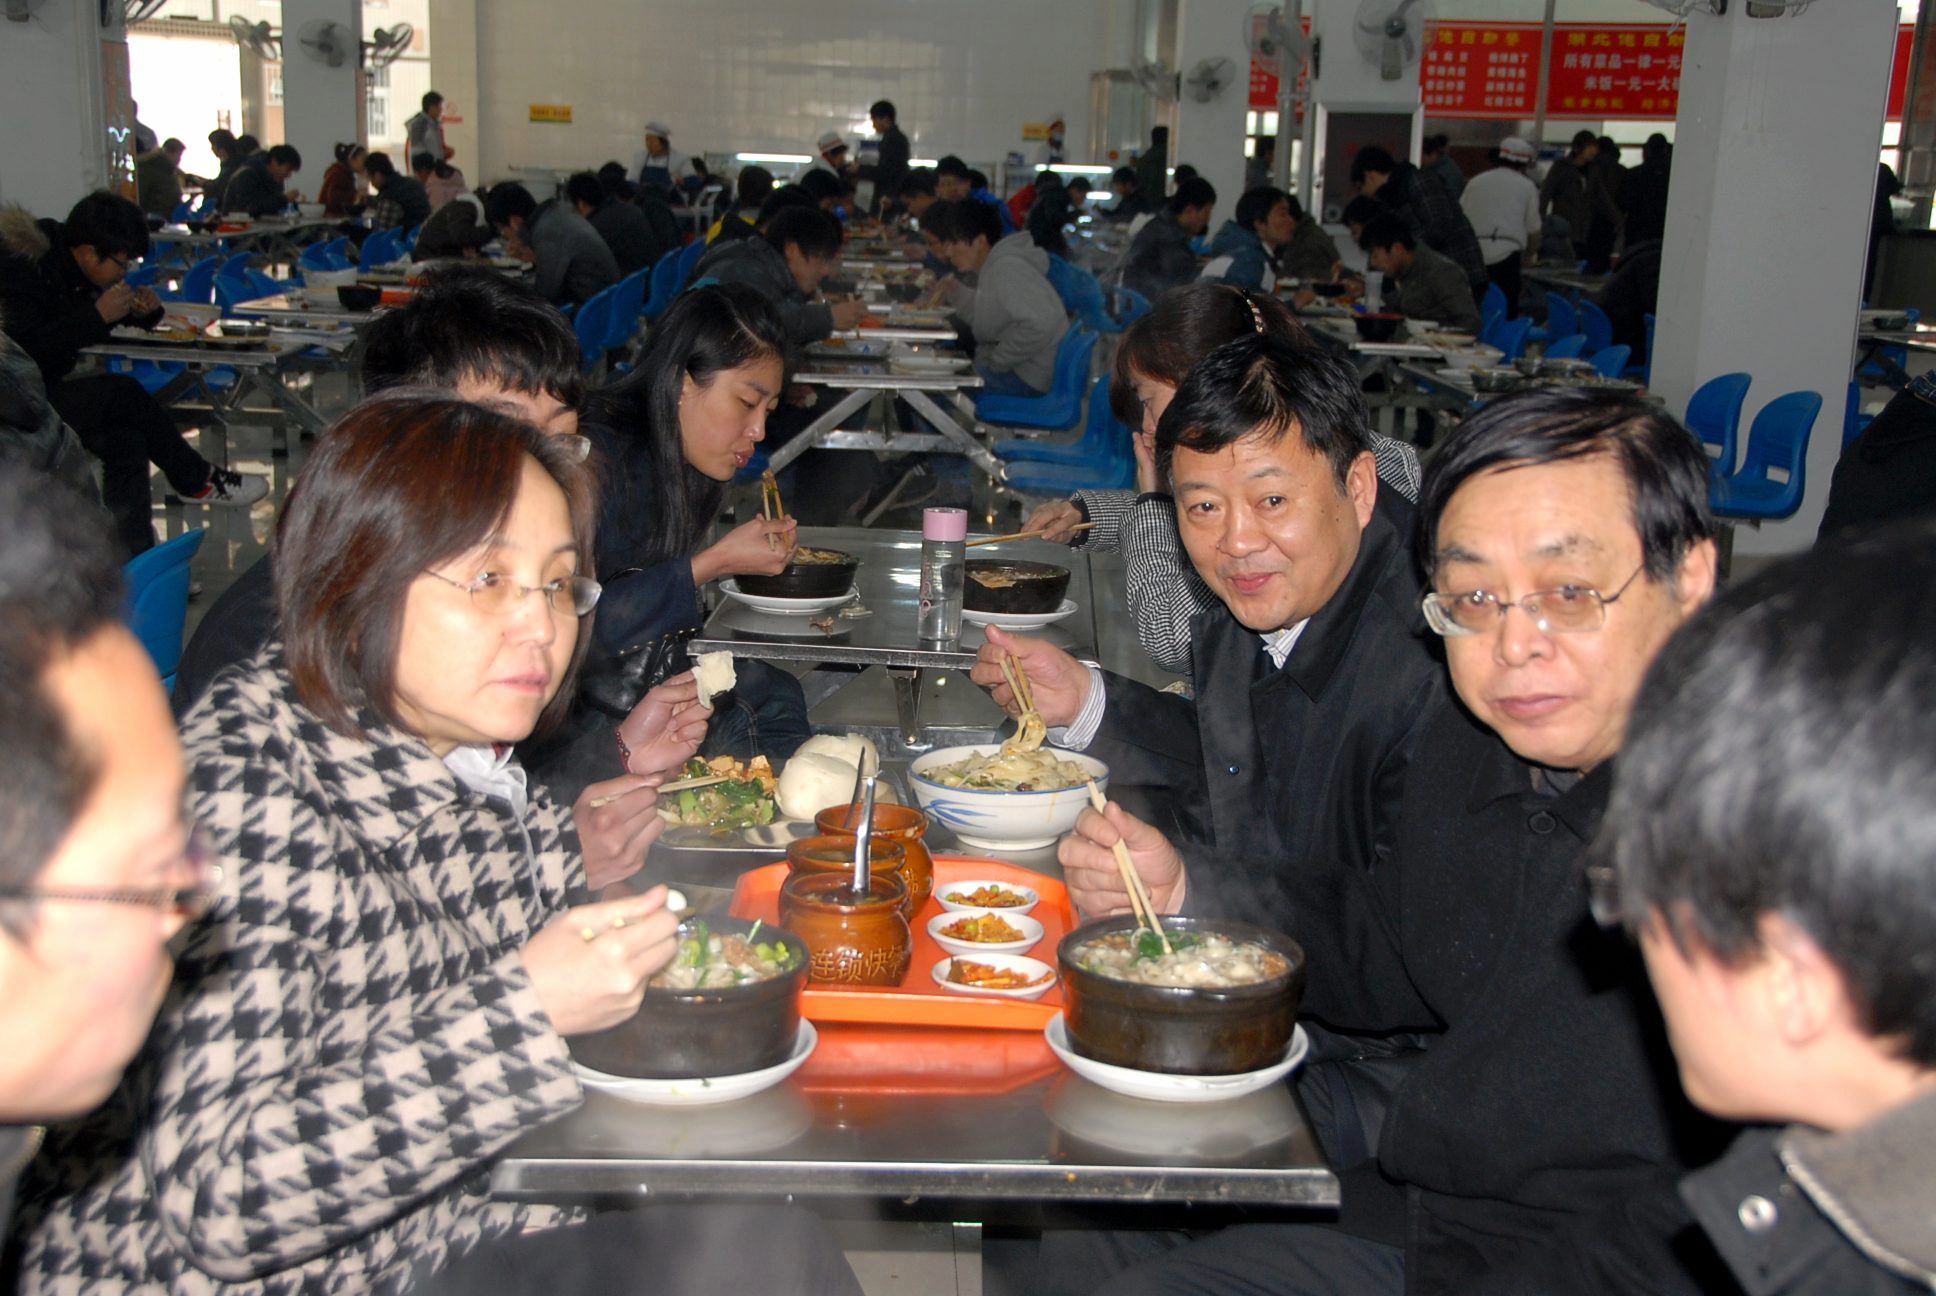 3安平副部长、党委书记苗相甫、校长石恒真等在西区学生餐厅与学生共进午餐.JPG